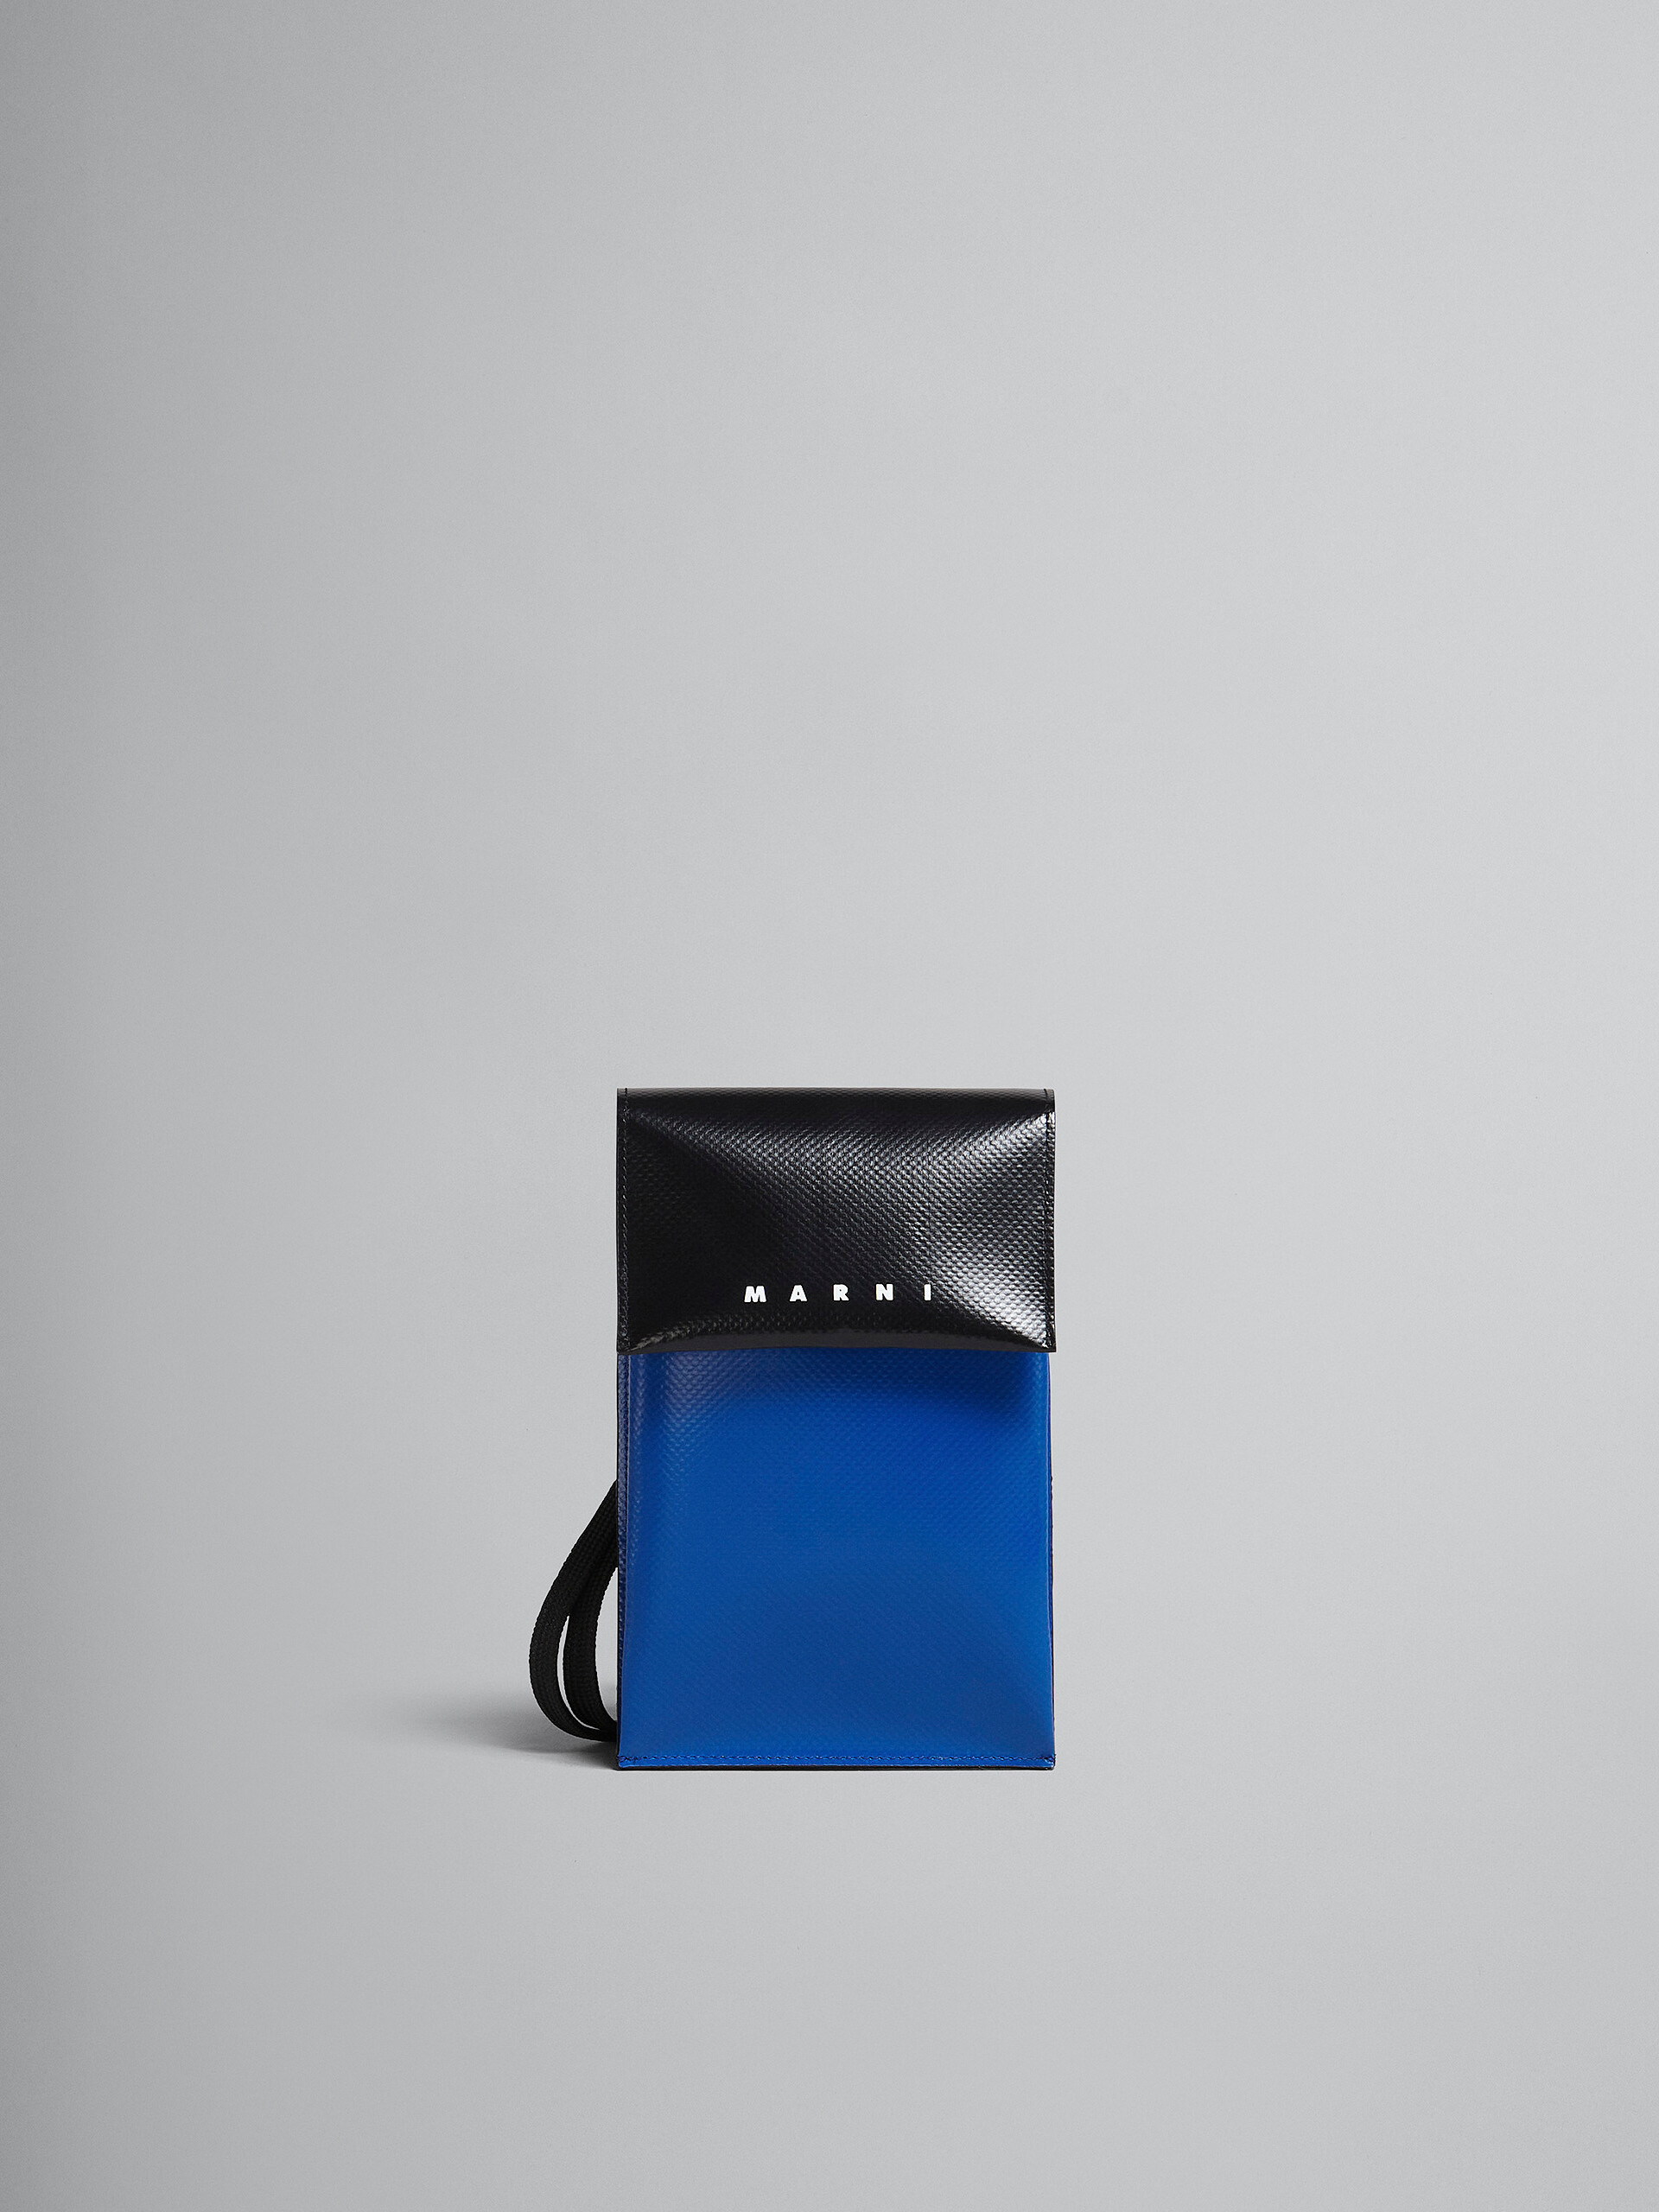 블랙 및 블루 폰 케이스 - Wallets and Small Leather Goods - Image 1